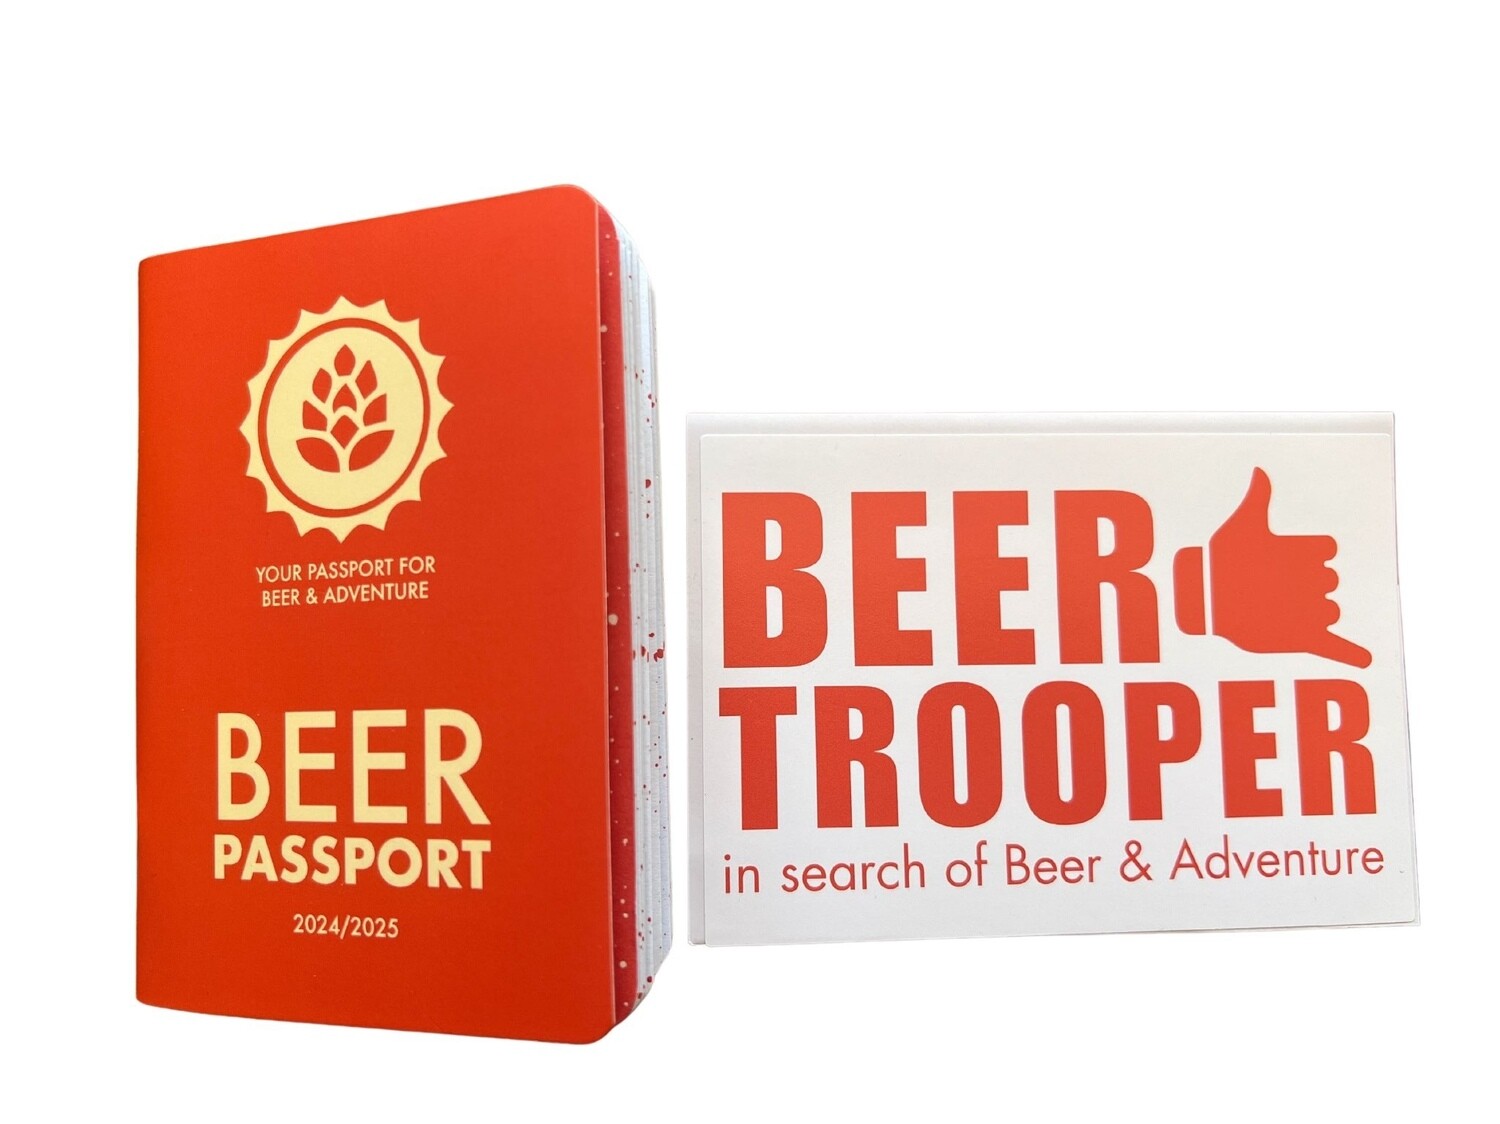 Beer Passport + Beer Trooper bumper sticker combo